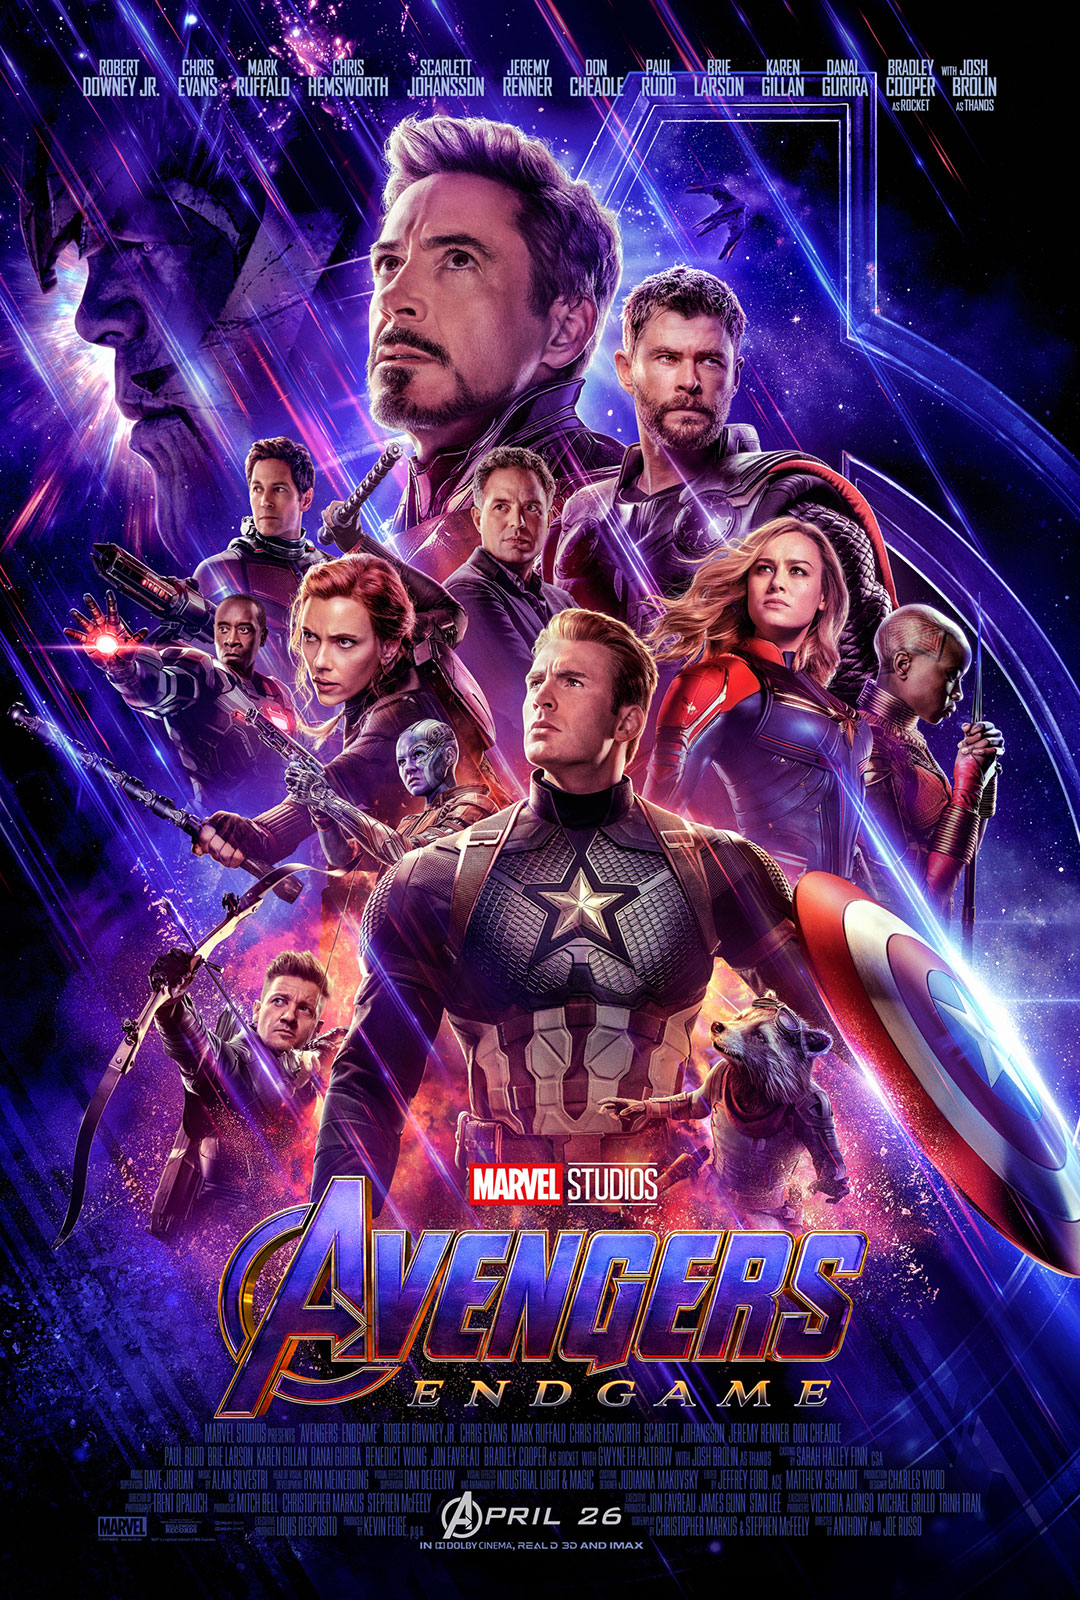 Avengers: Endgame – Final Trailer